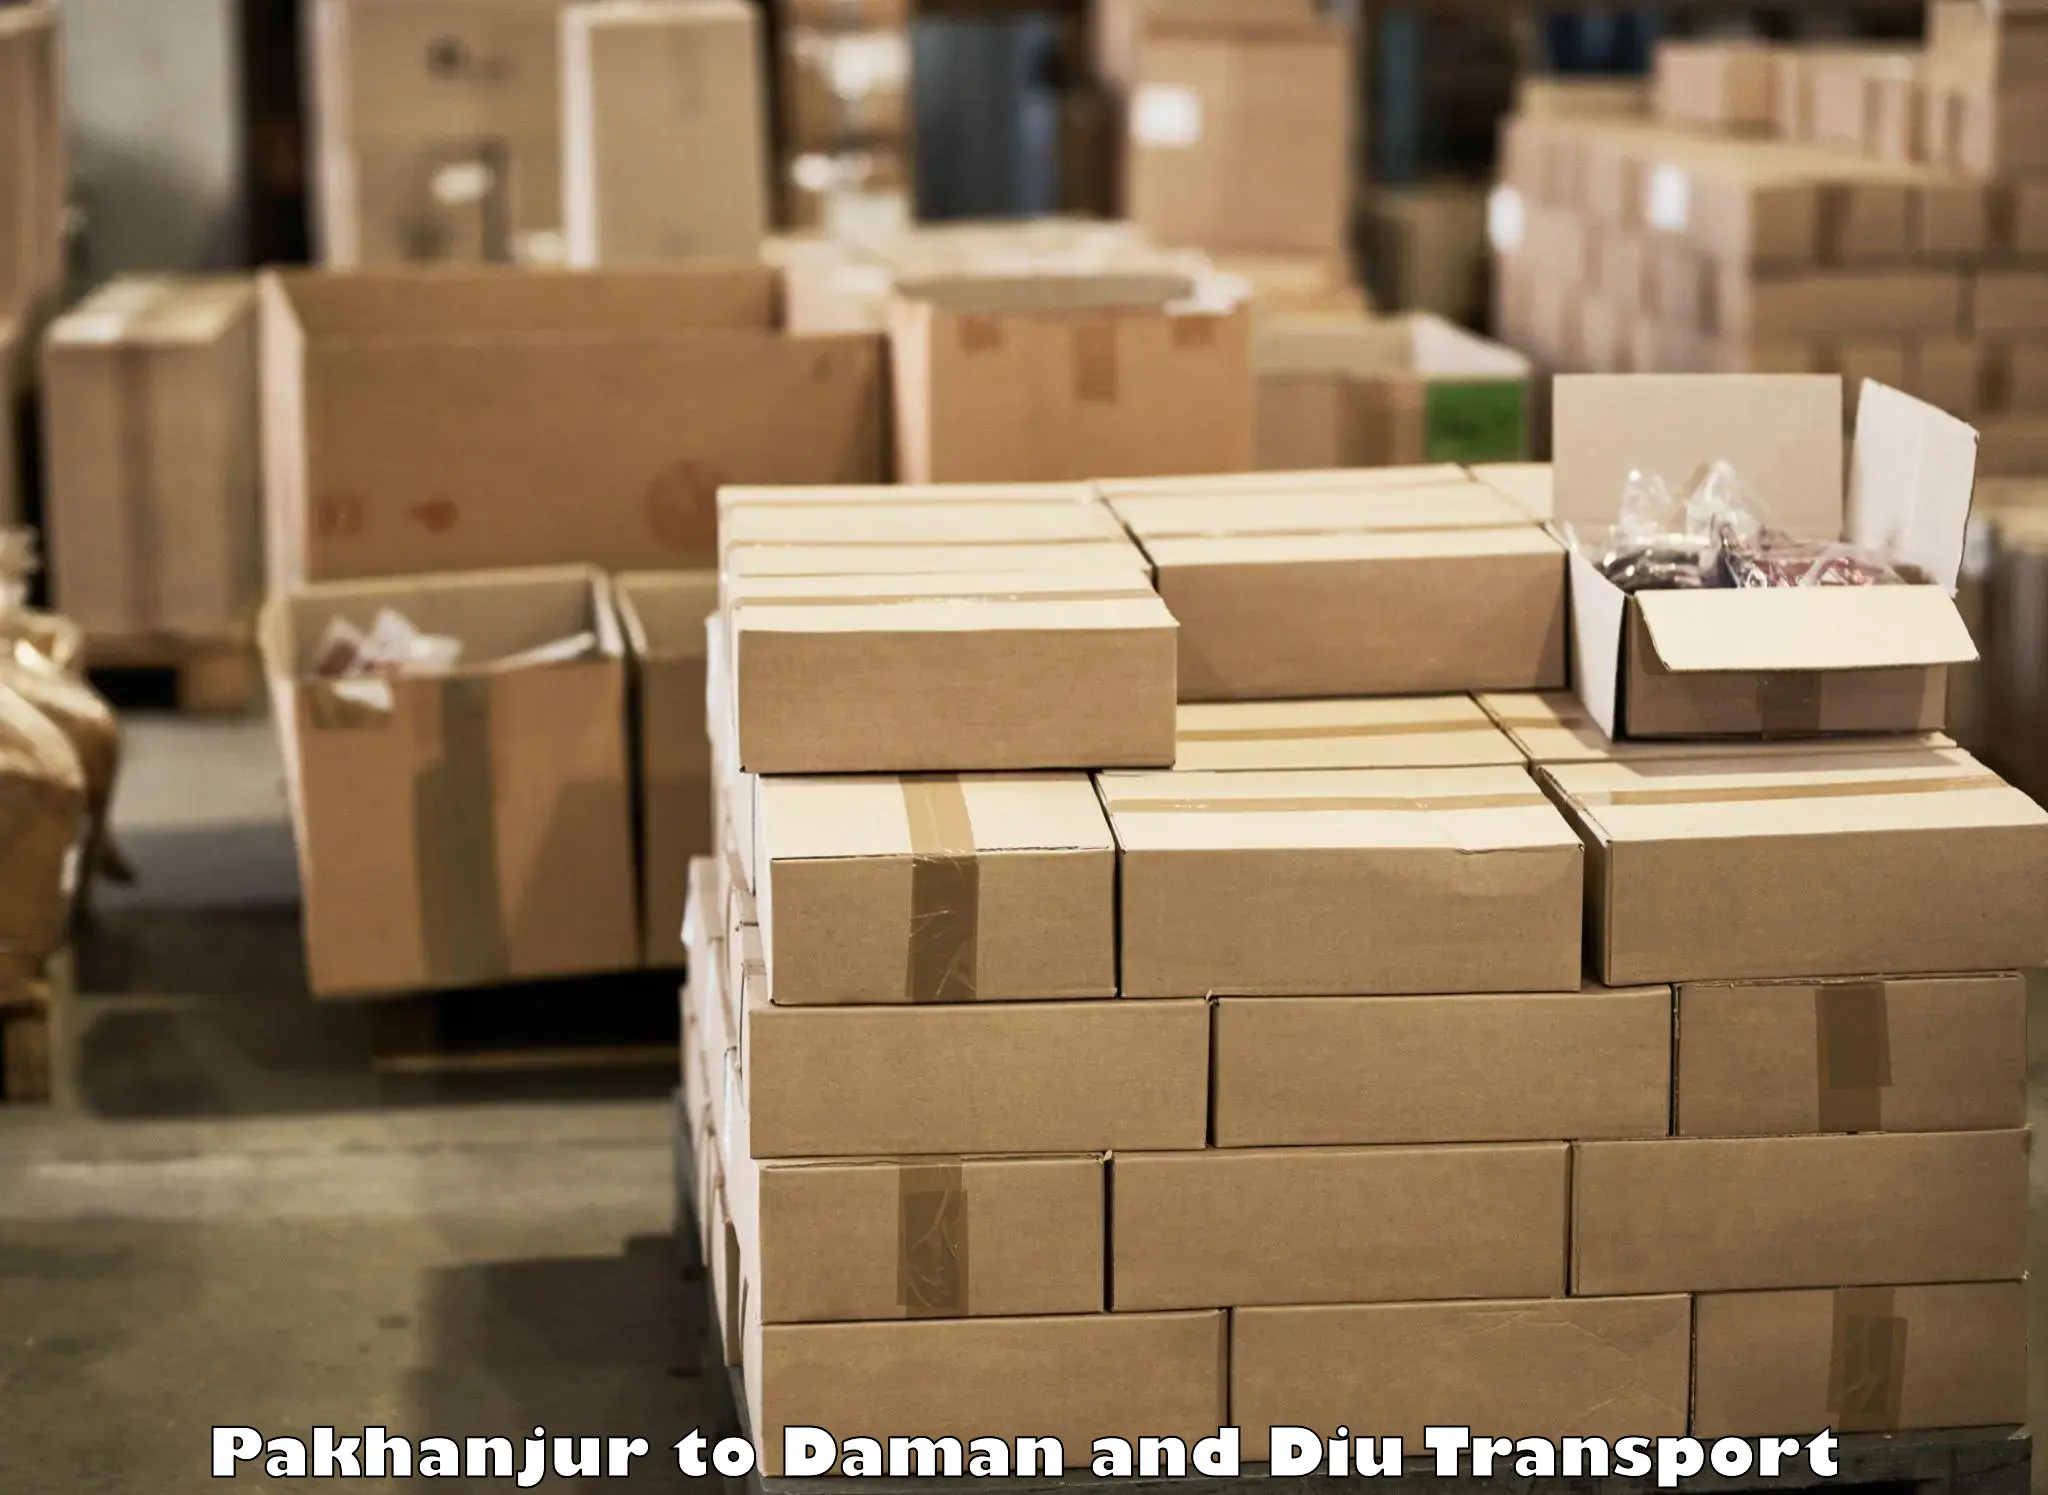 Furniture transport service Pakhanjur to Daman and Diu